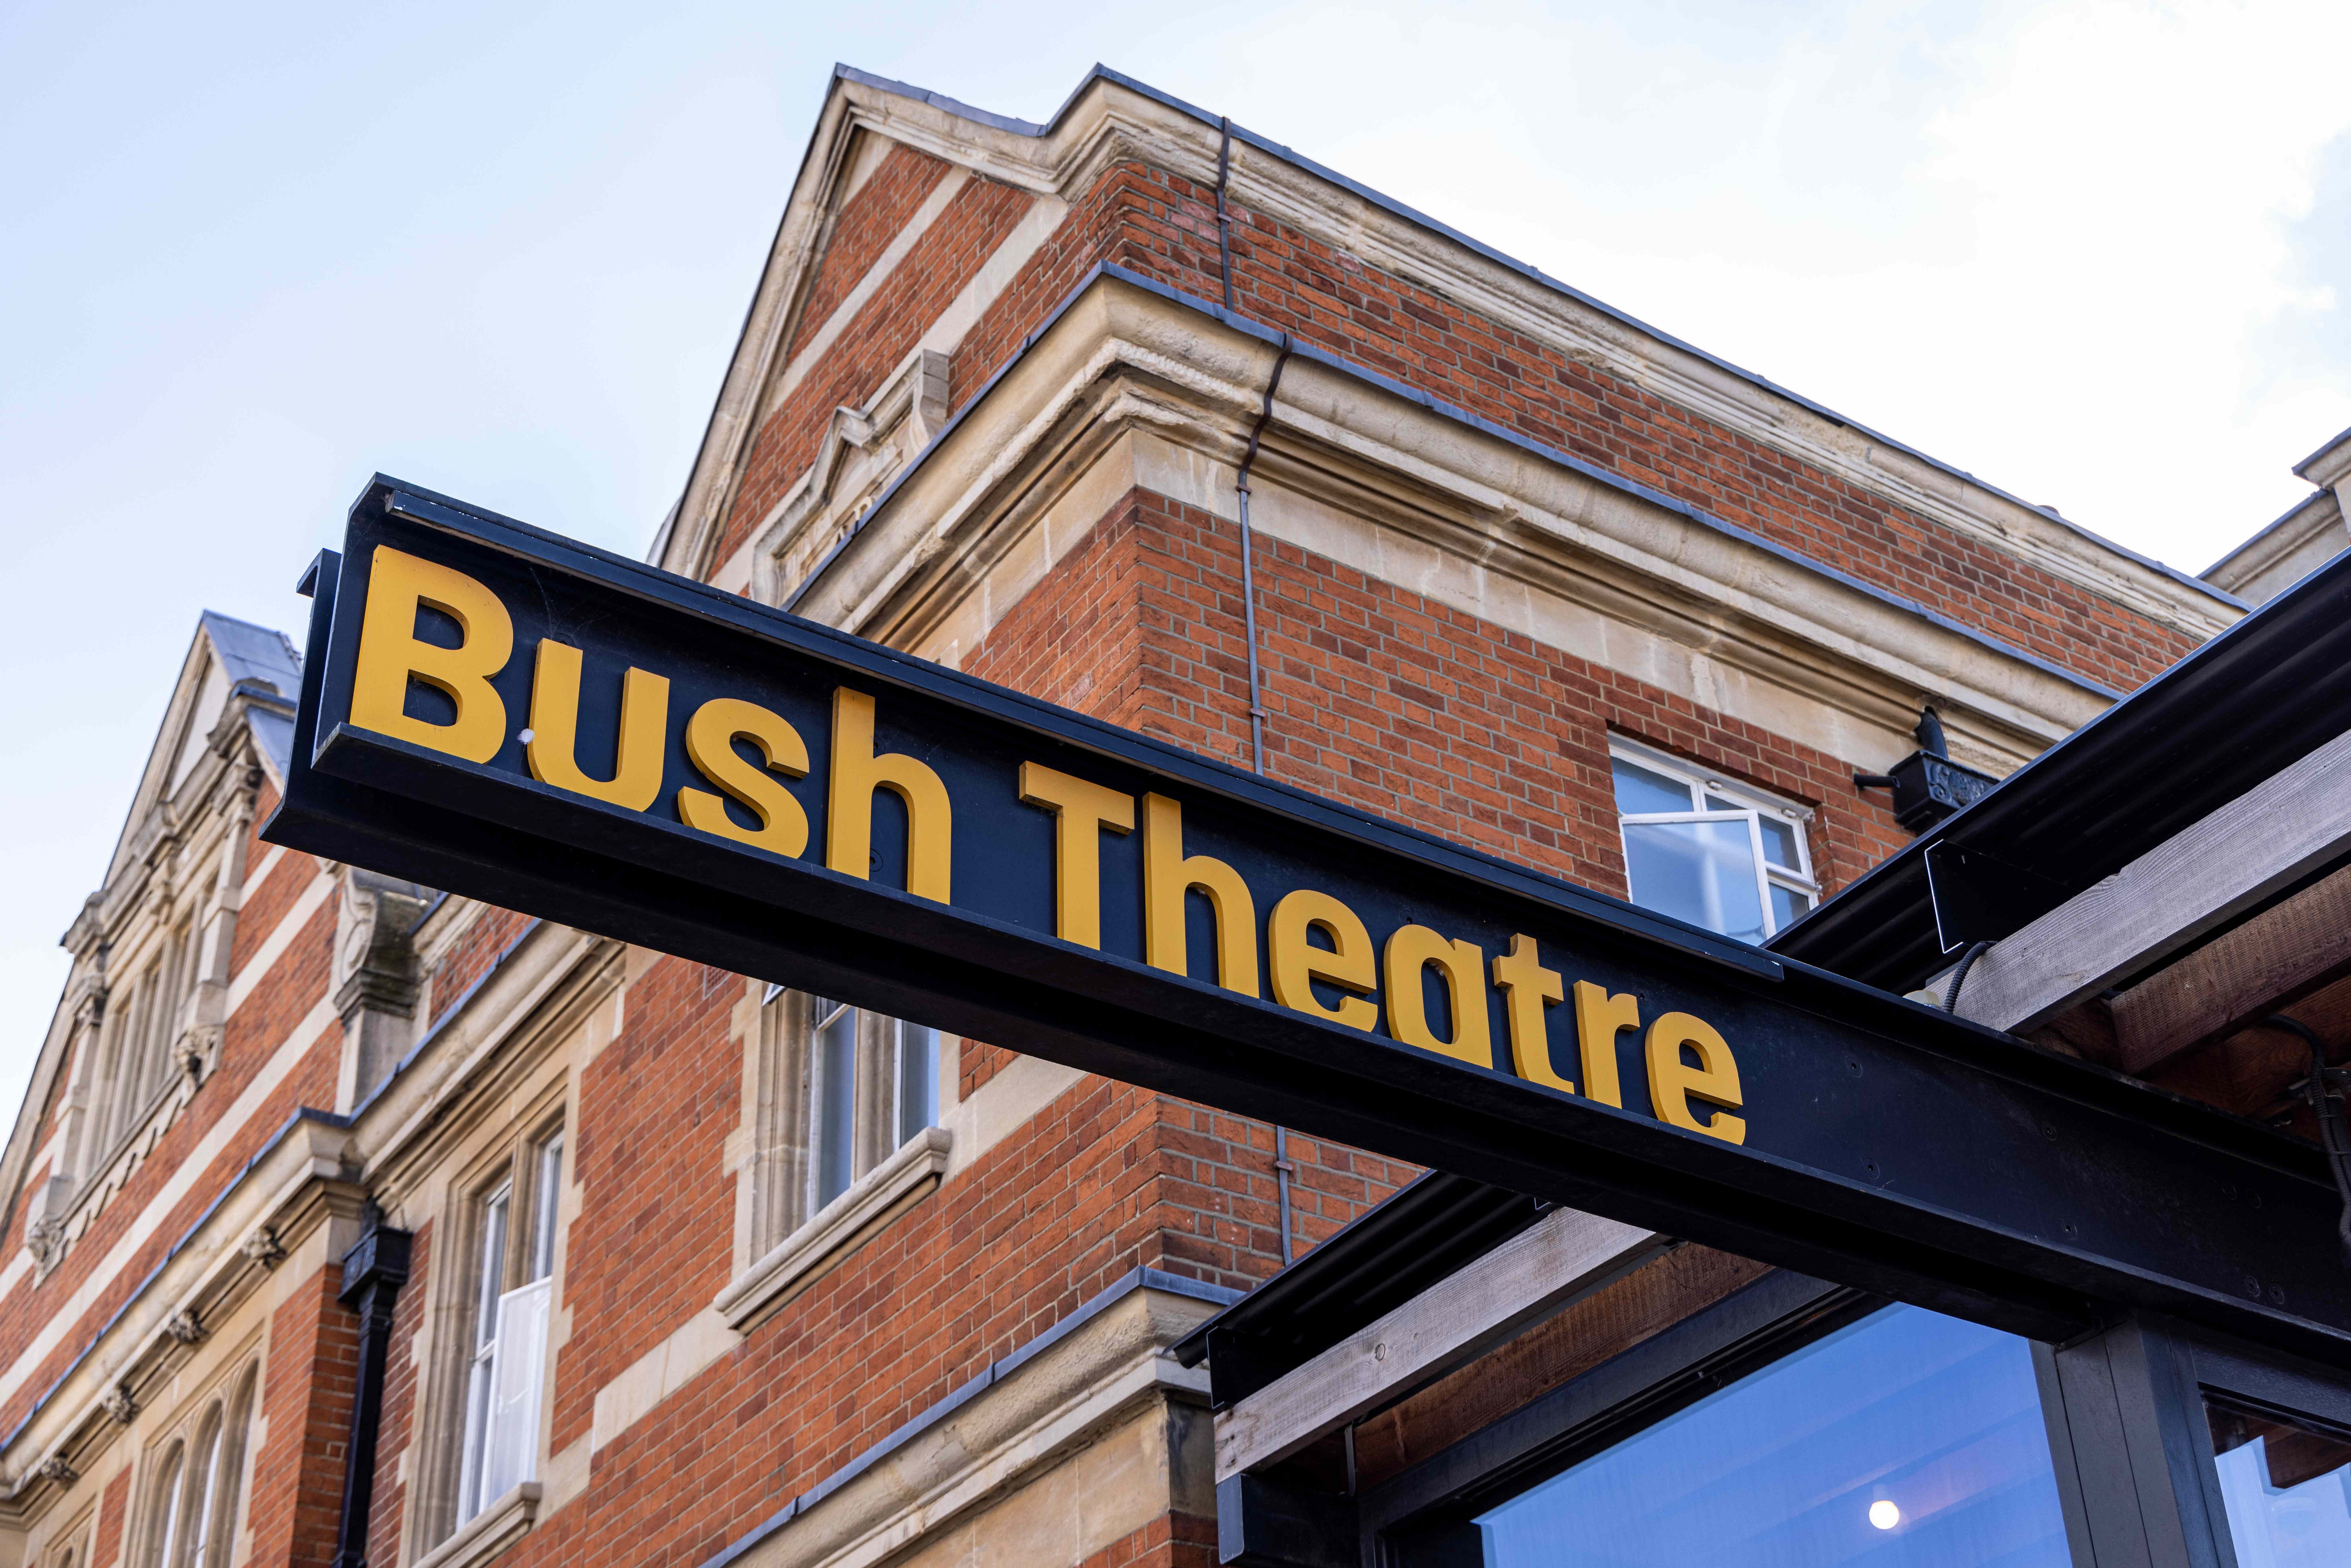 Bush Theatre sign